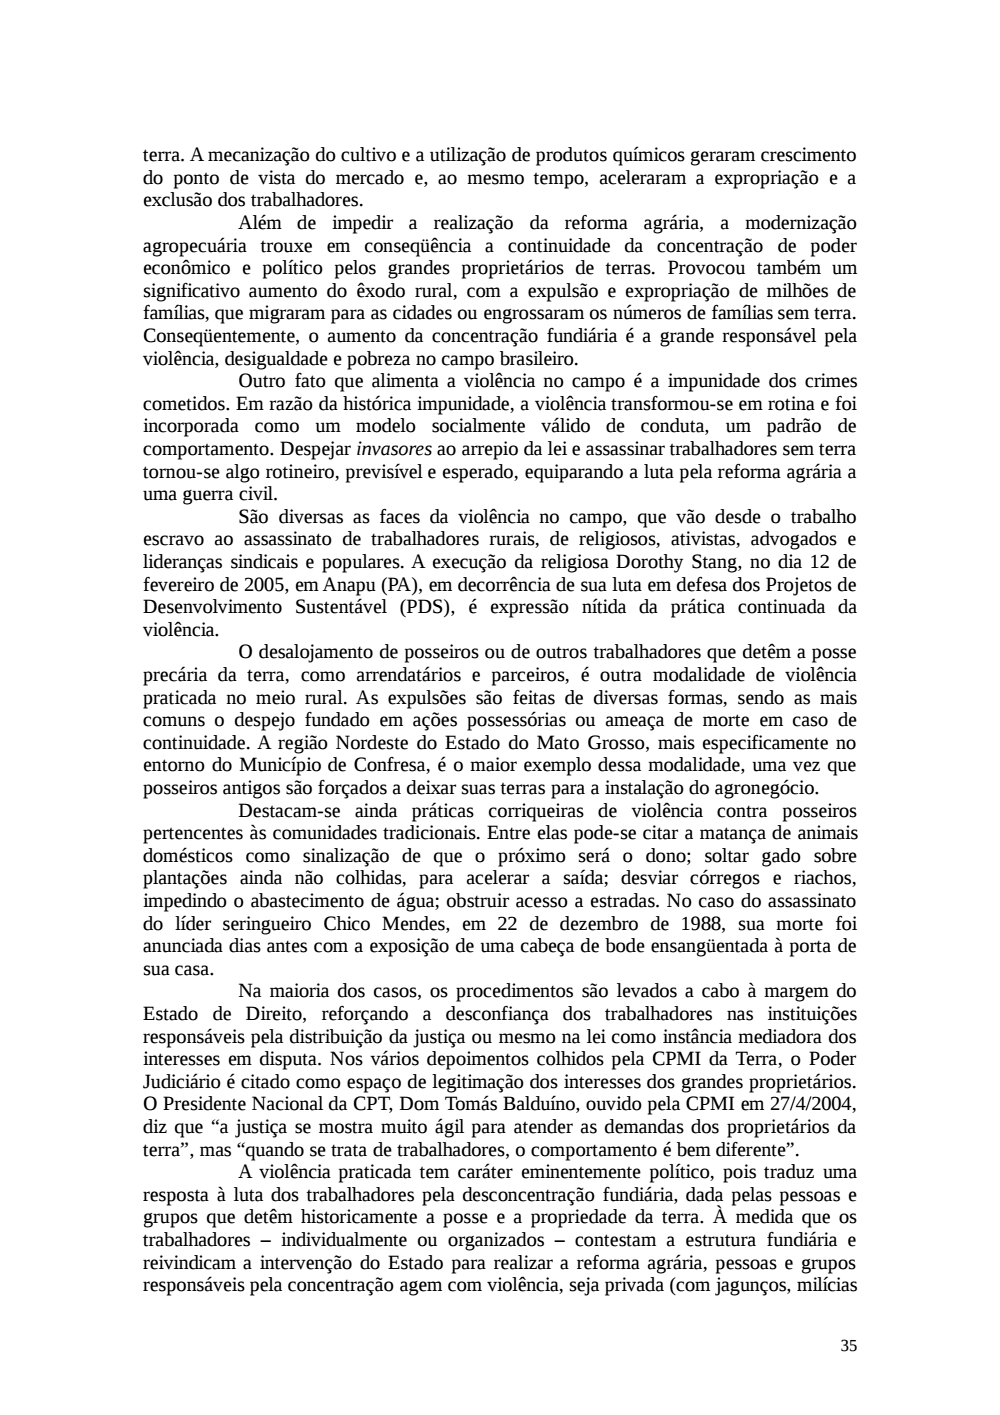 Page 35 from Relatório final da comissão